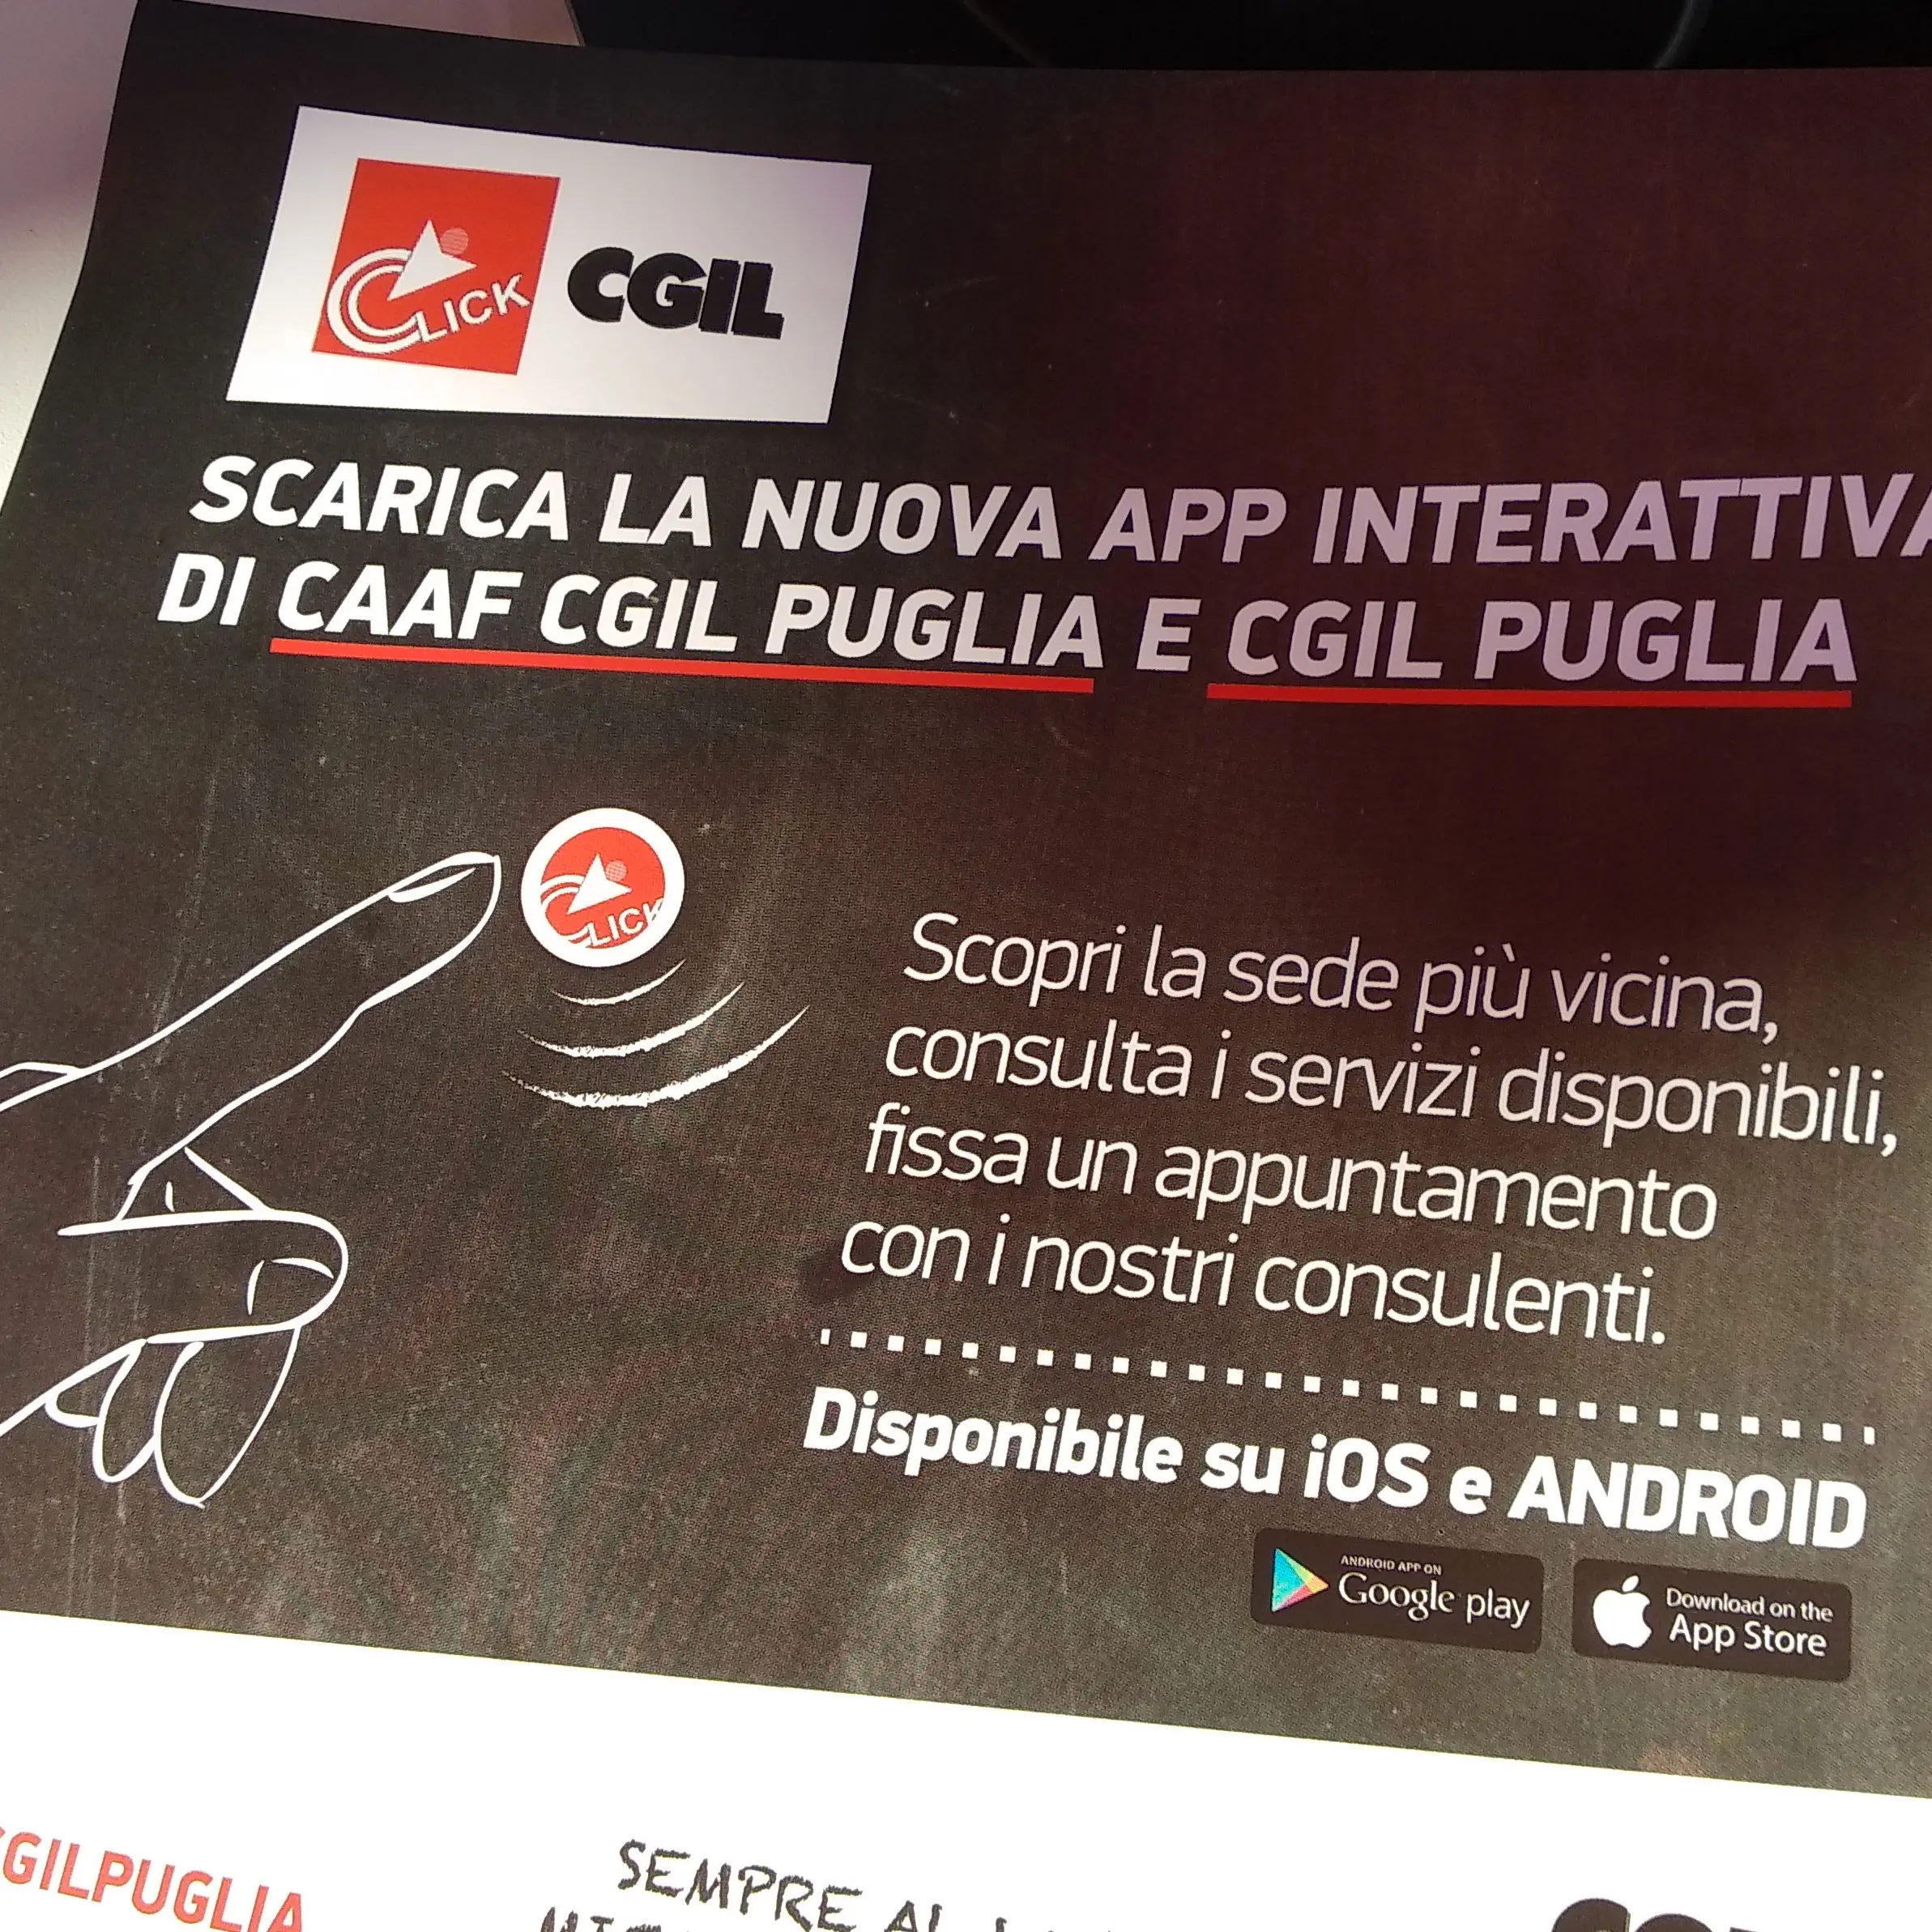 Ecco «ClickCgil», app interattiva ideata in Puglia